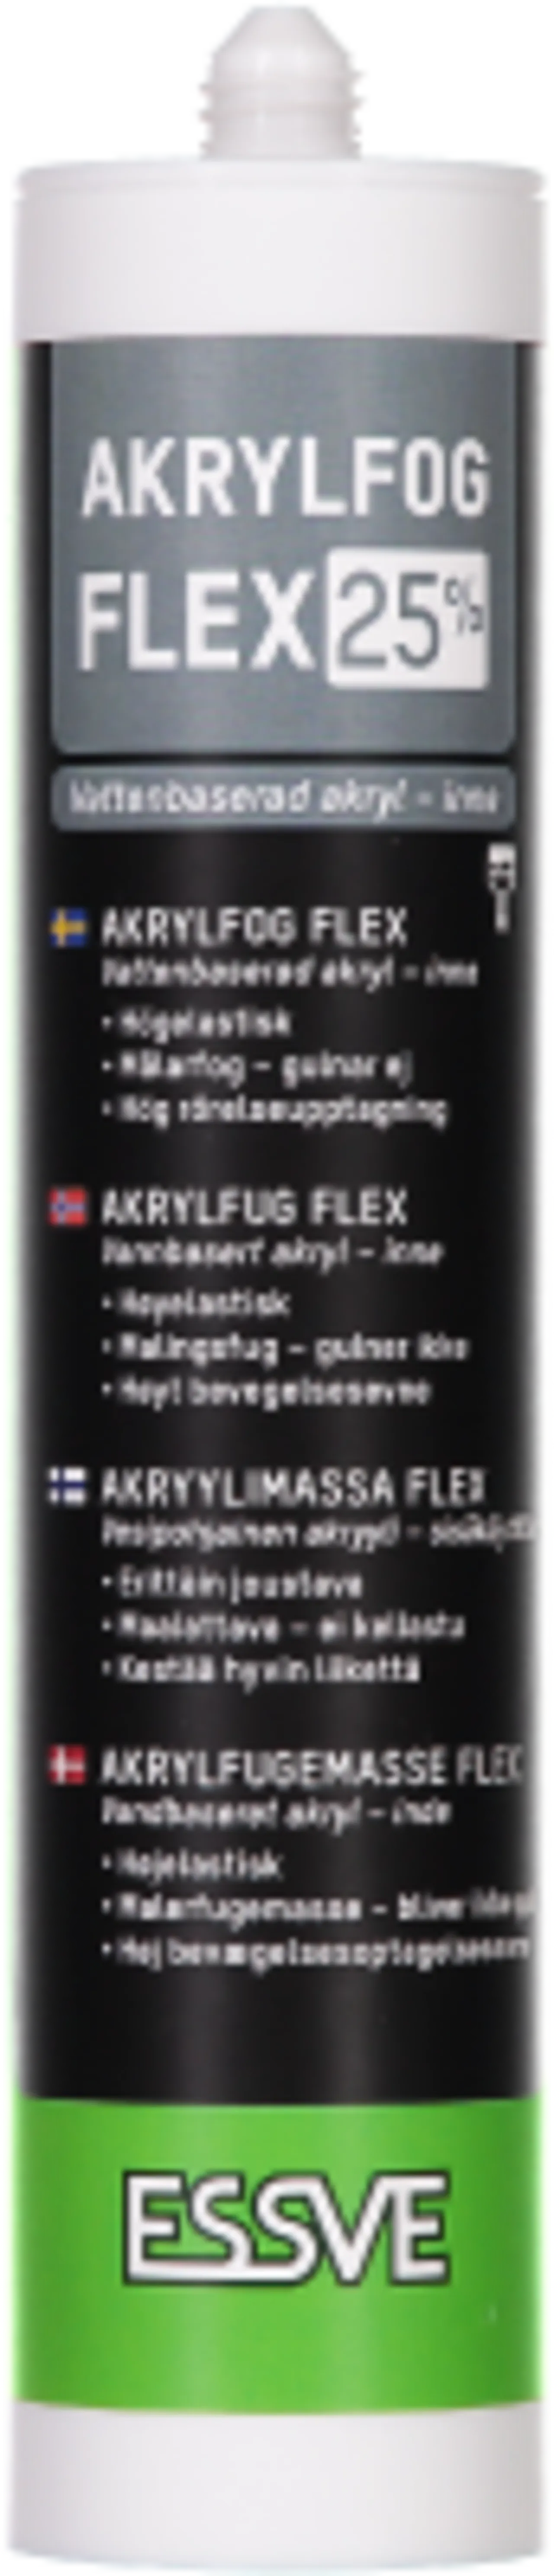 Akryl flex 25 transparant300ml